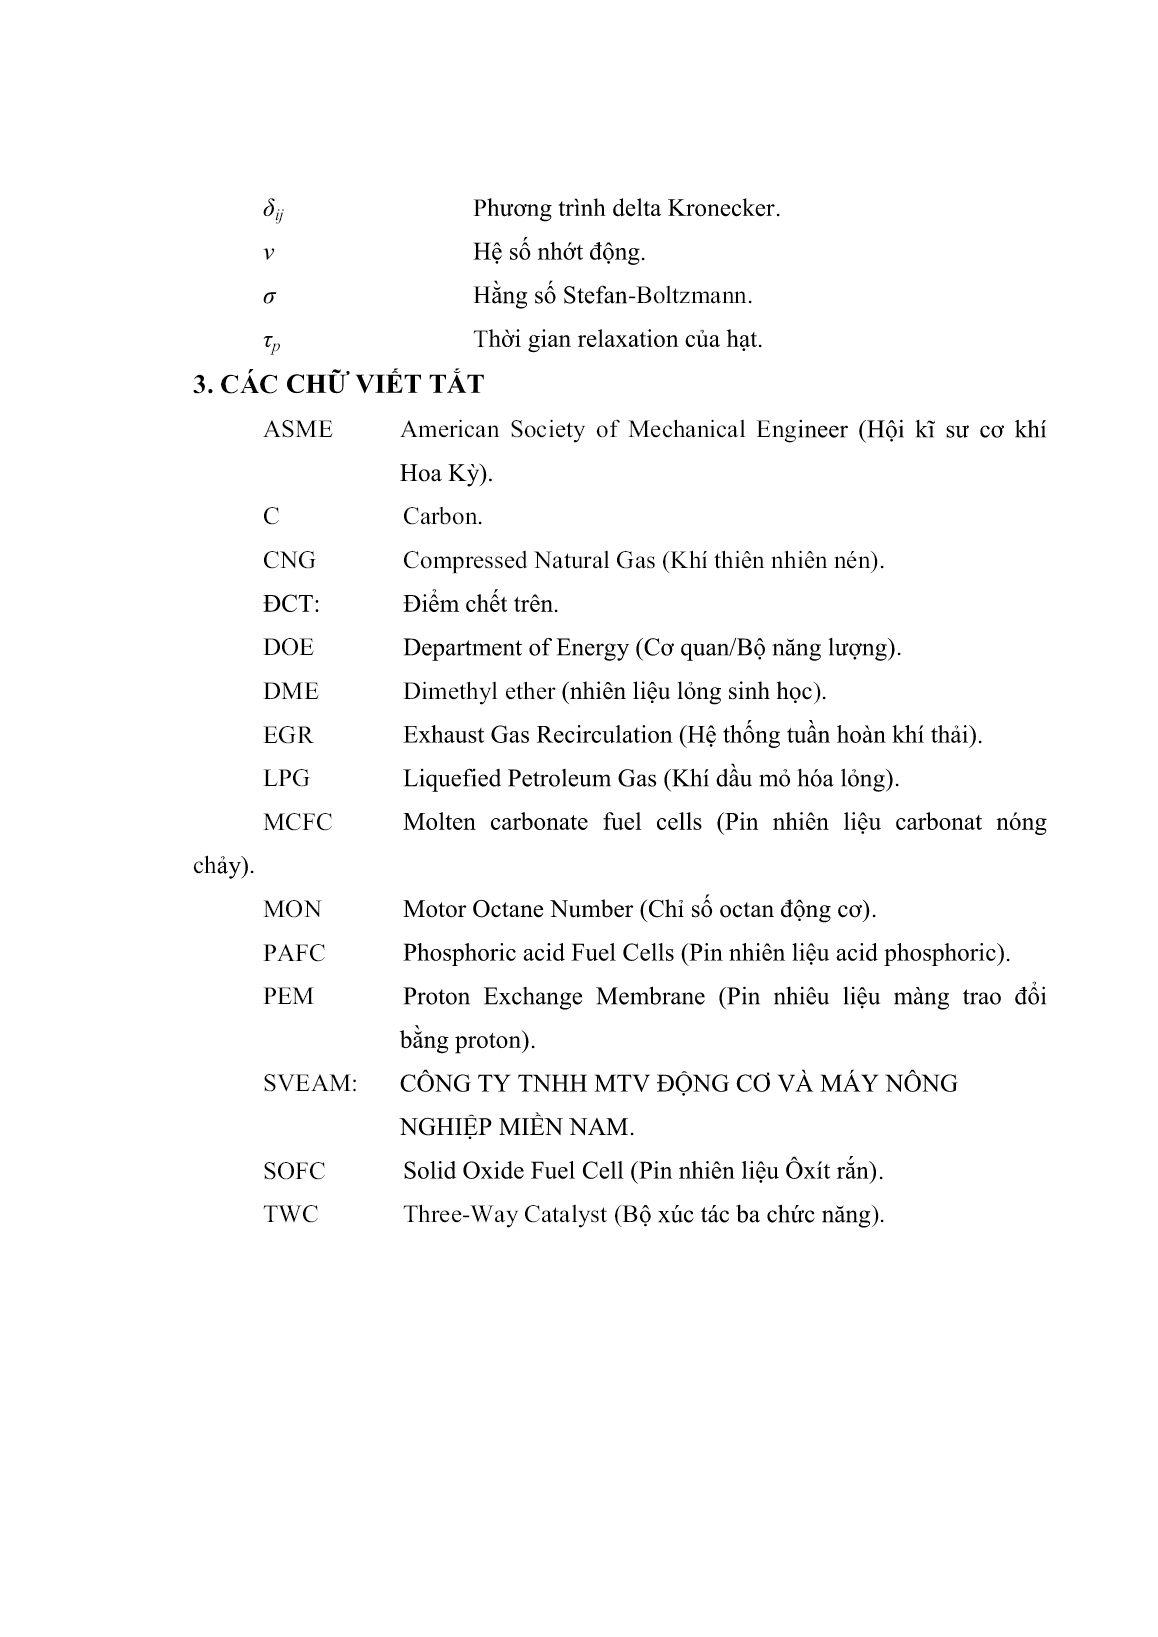 Luận án Nghiên cứu quá trình hình thành hỗn hợp và cháy của động cơ dual fuel (biogas-diesel) trang 9